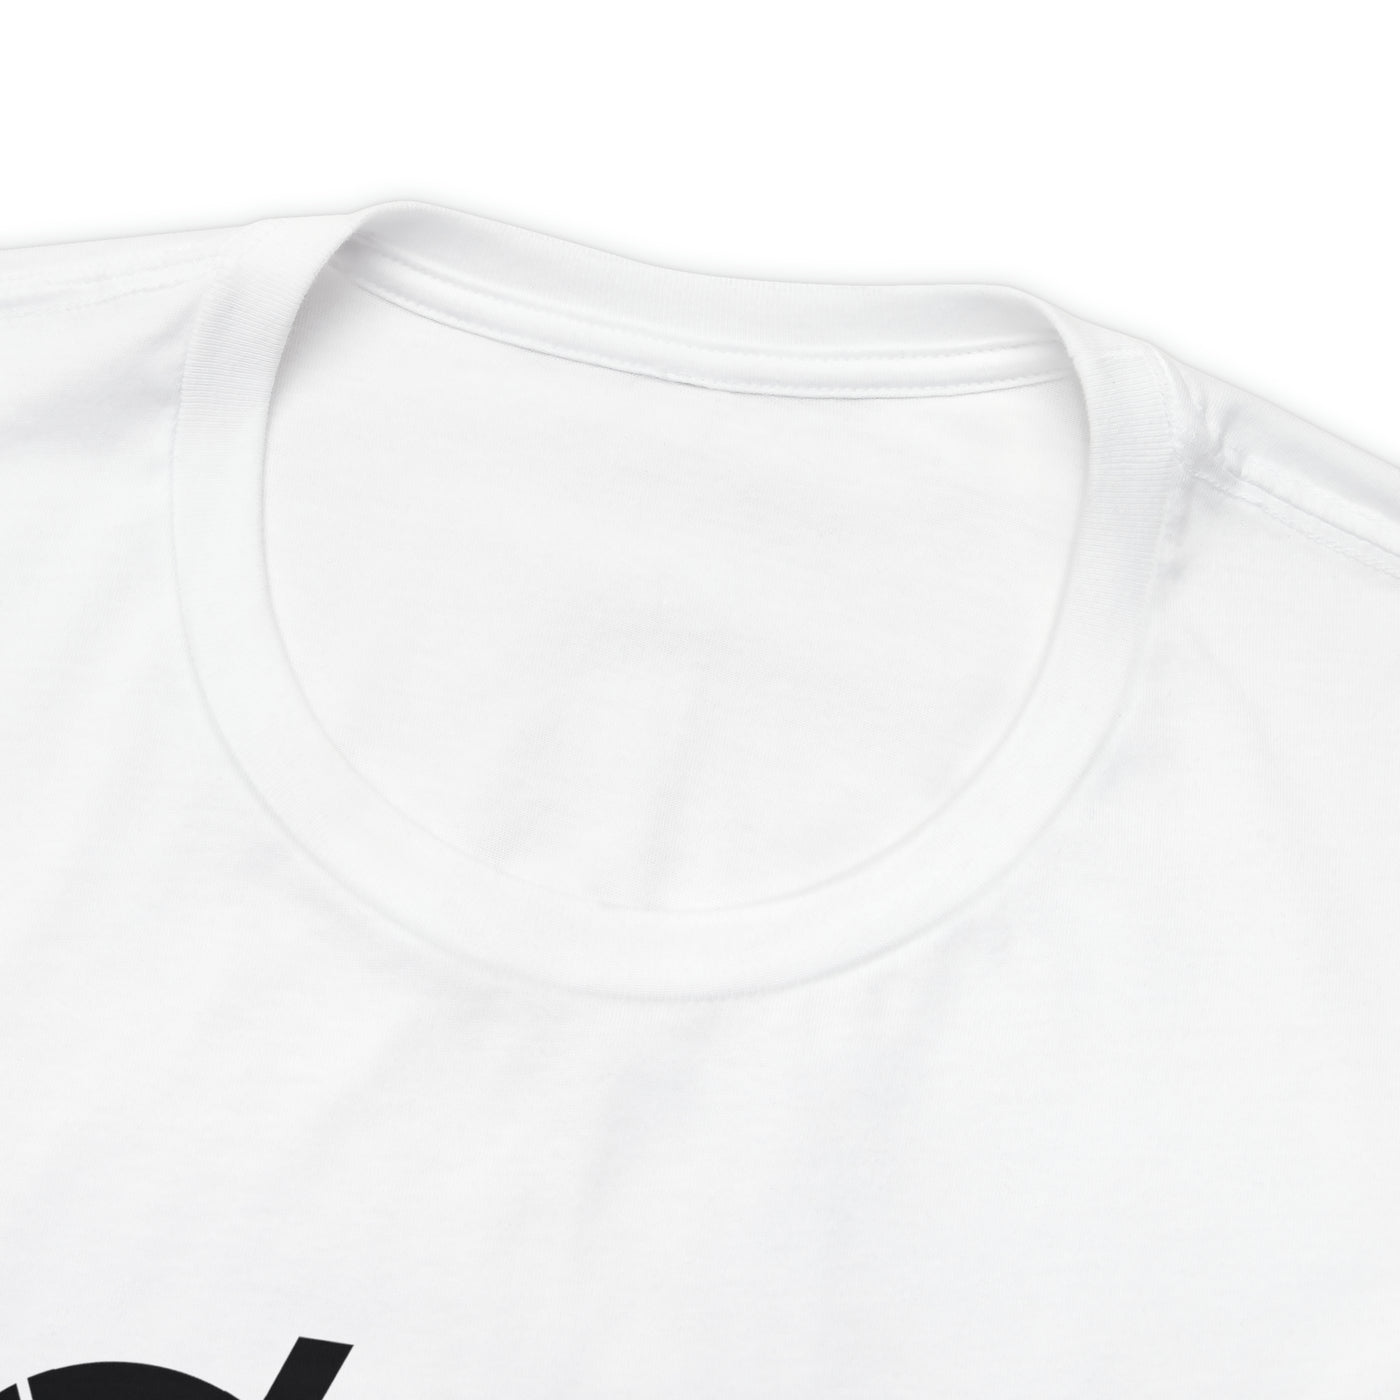 Variants Unisex Soft Cotton T-Shirt